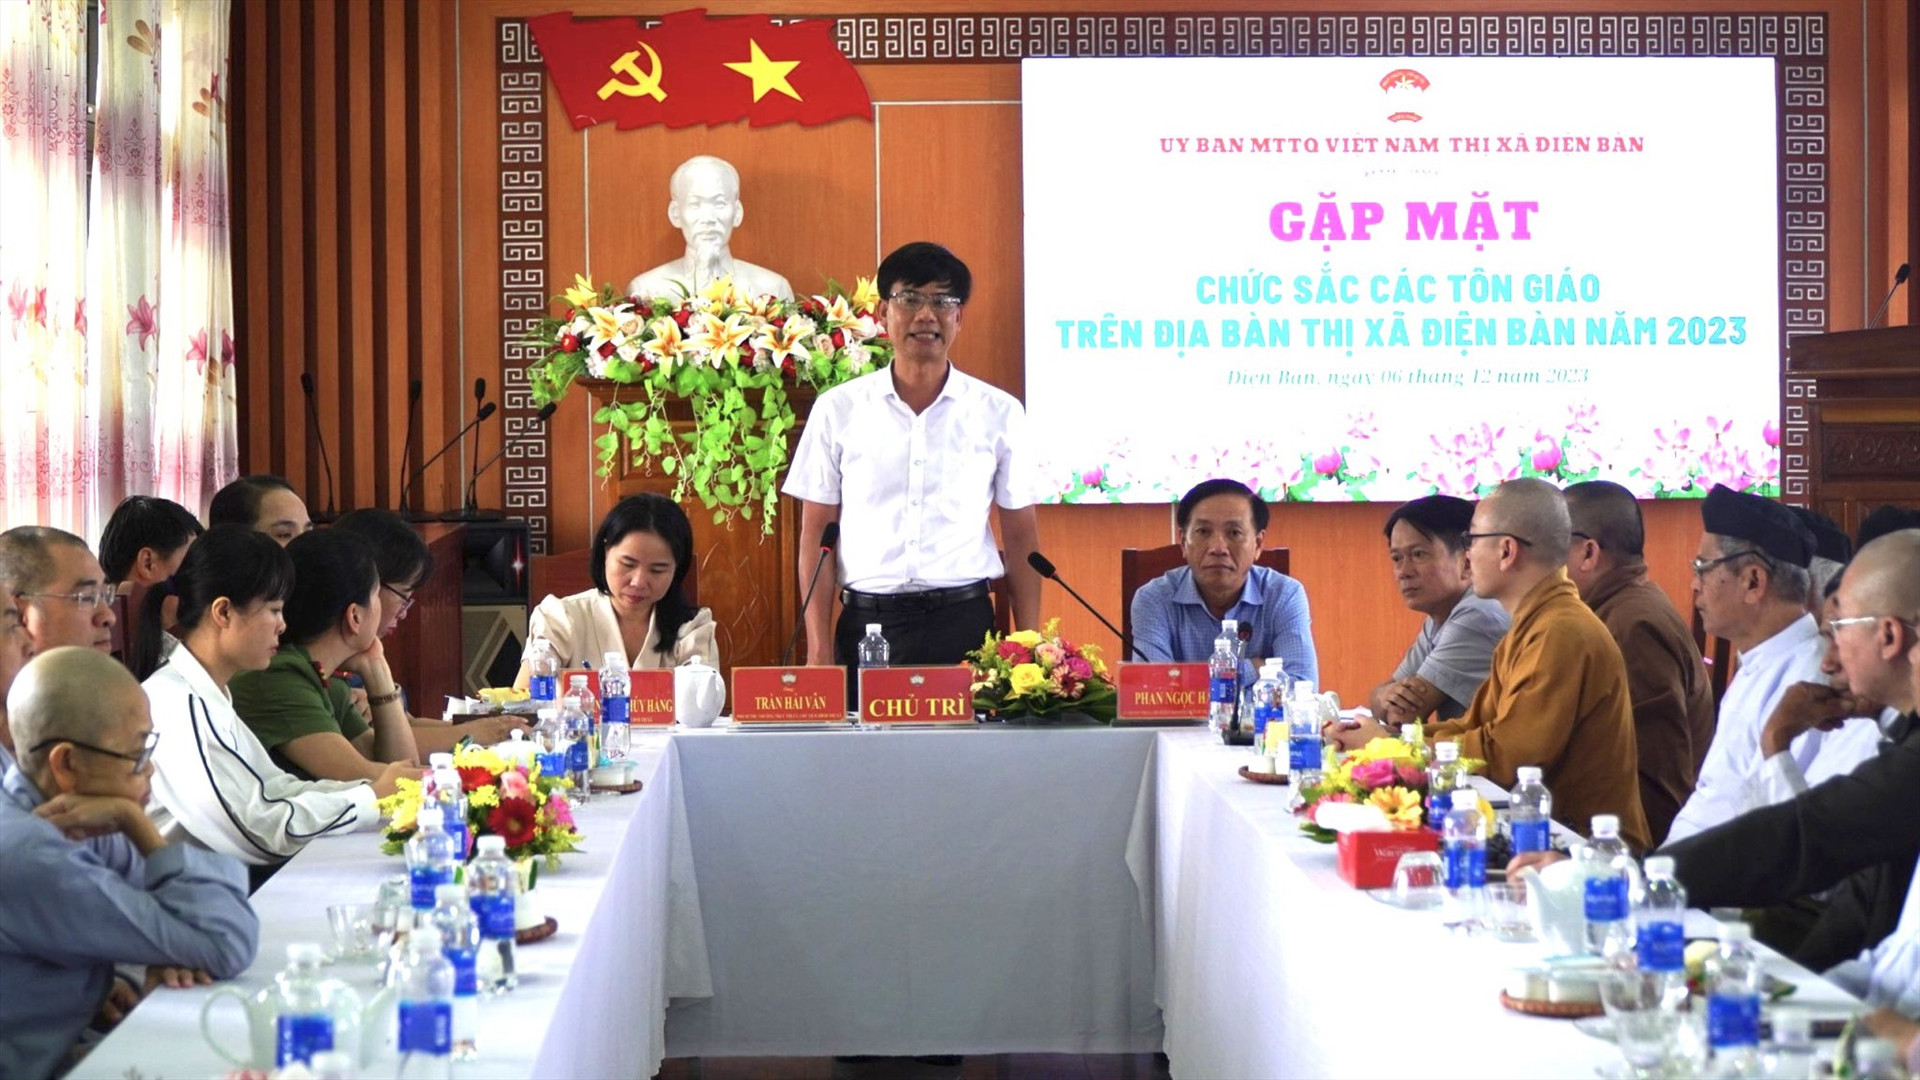 Lãnh đạo thị xã Điện Bàn chia sẻ với chức sắc các tôn giáo về tình hình kinh tế - xã hội trên địa bàn. Ảnh: P.H